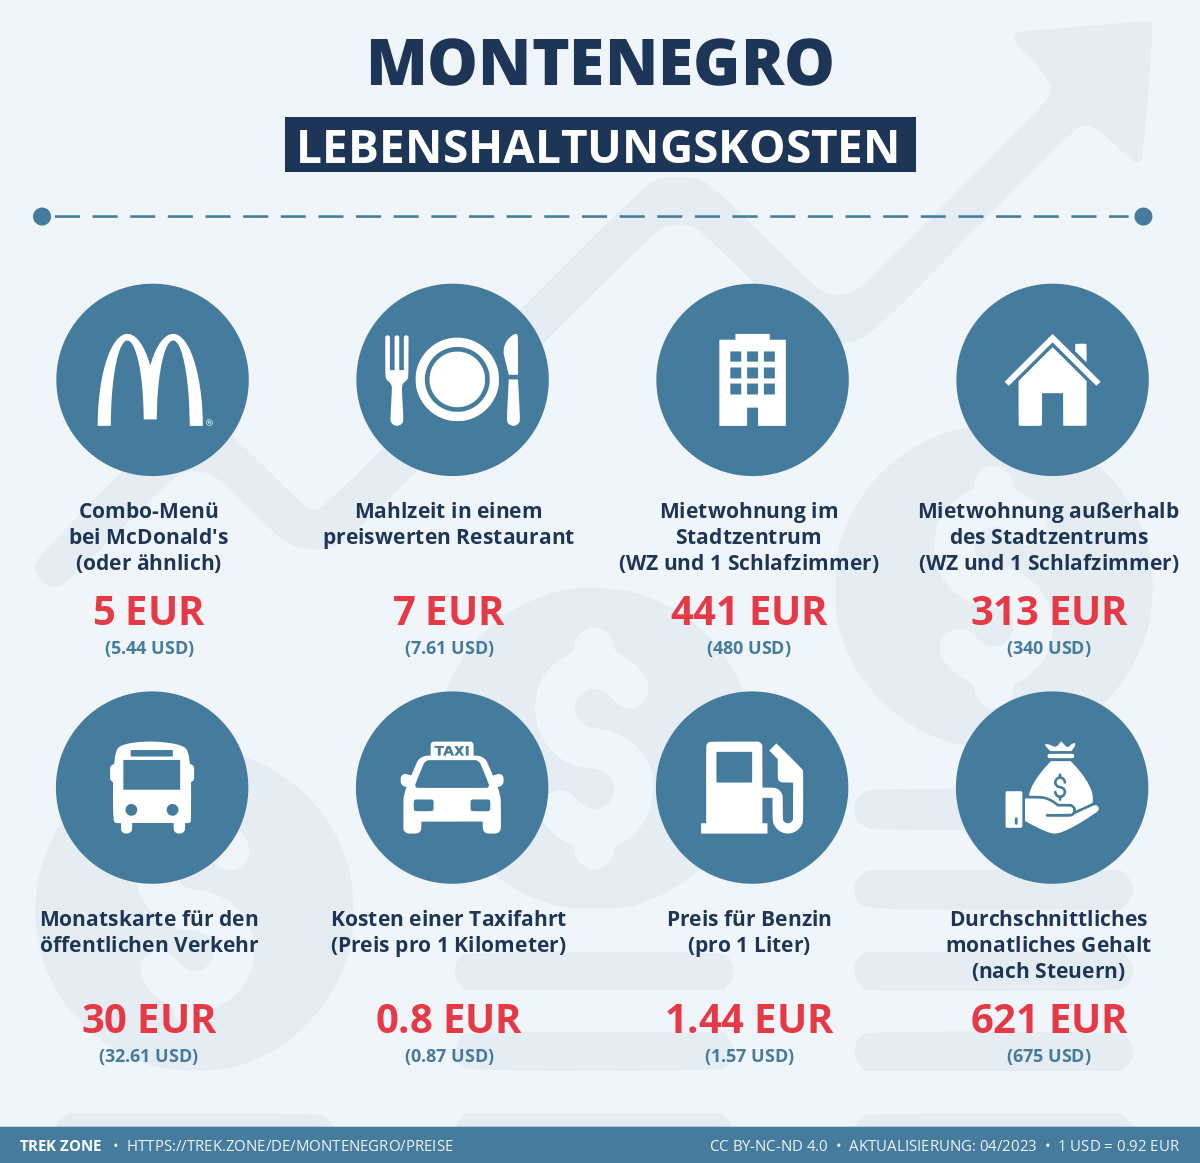 preise und lebenskosten montenegro